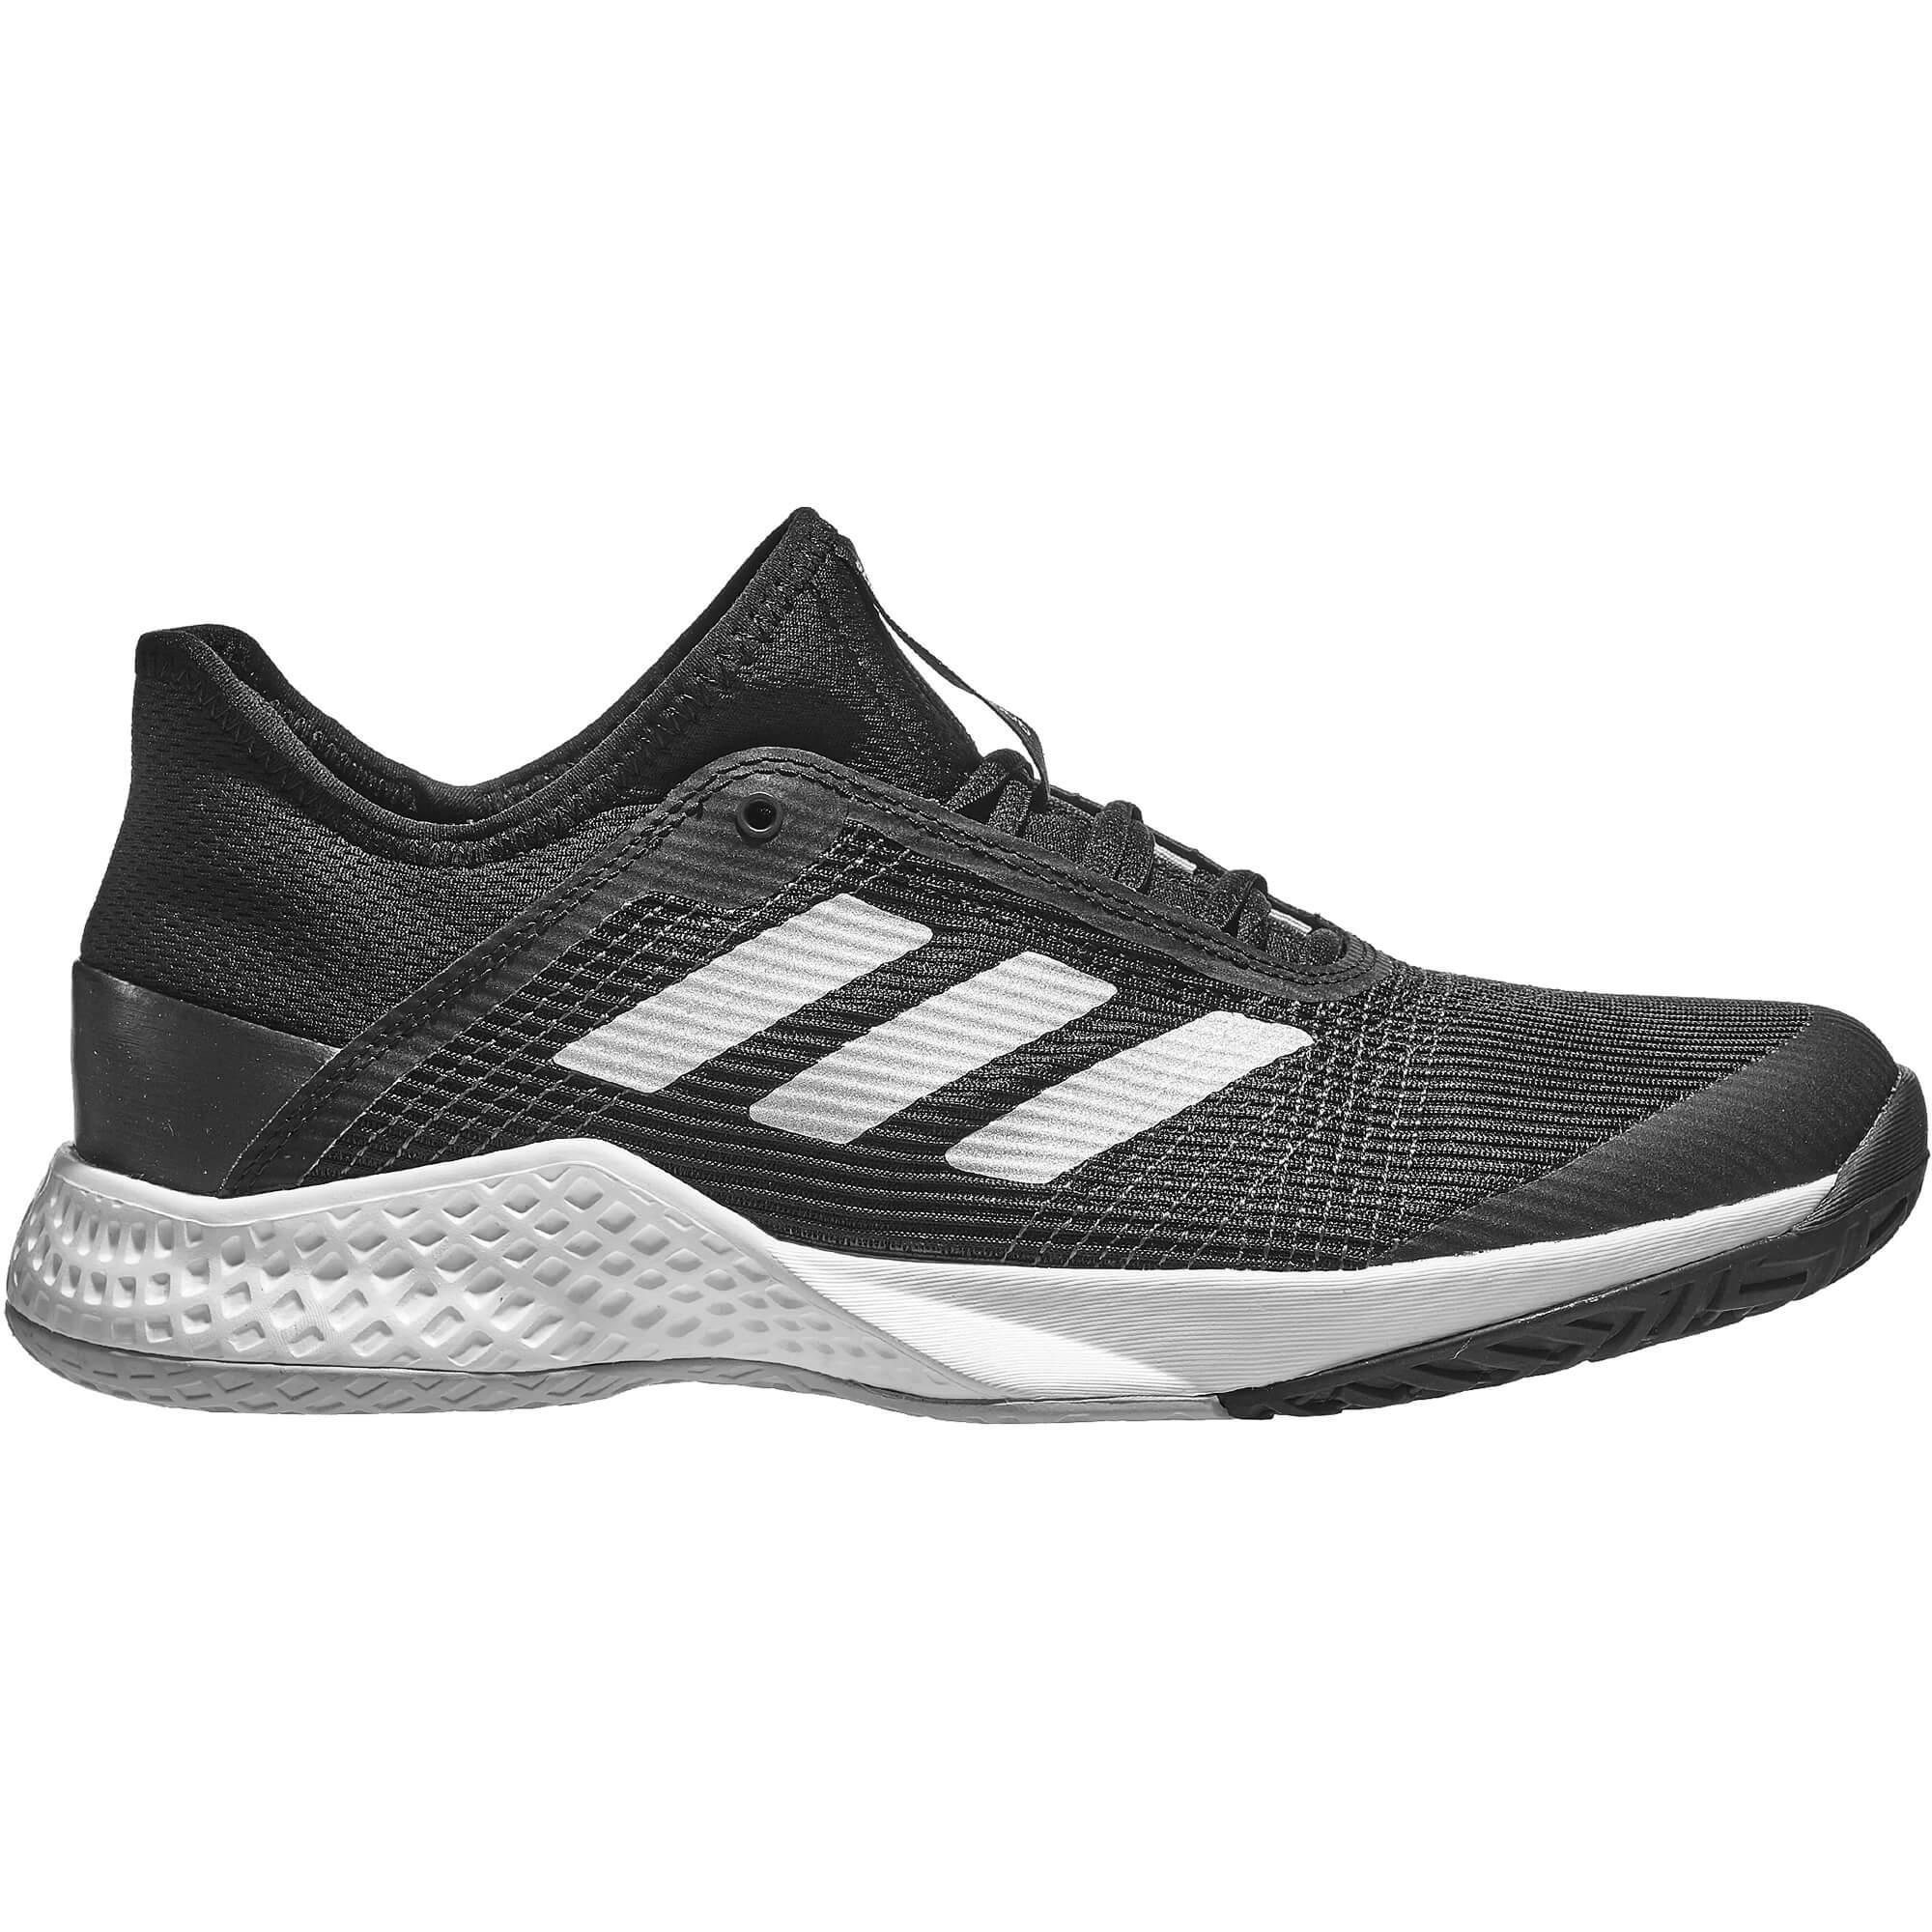 Adidas Mens Adizero Club Tennis Shoes - Black/Silver - Tennisnuts.com